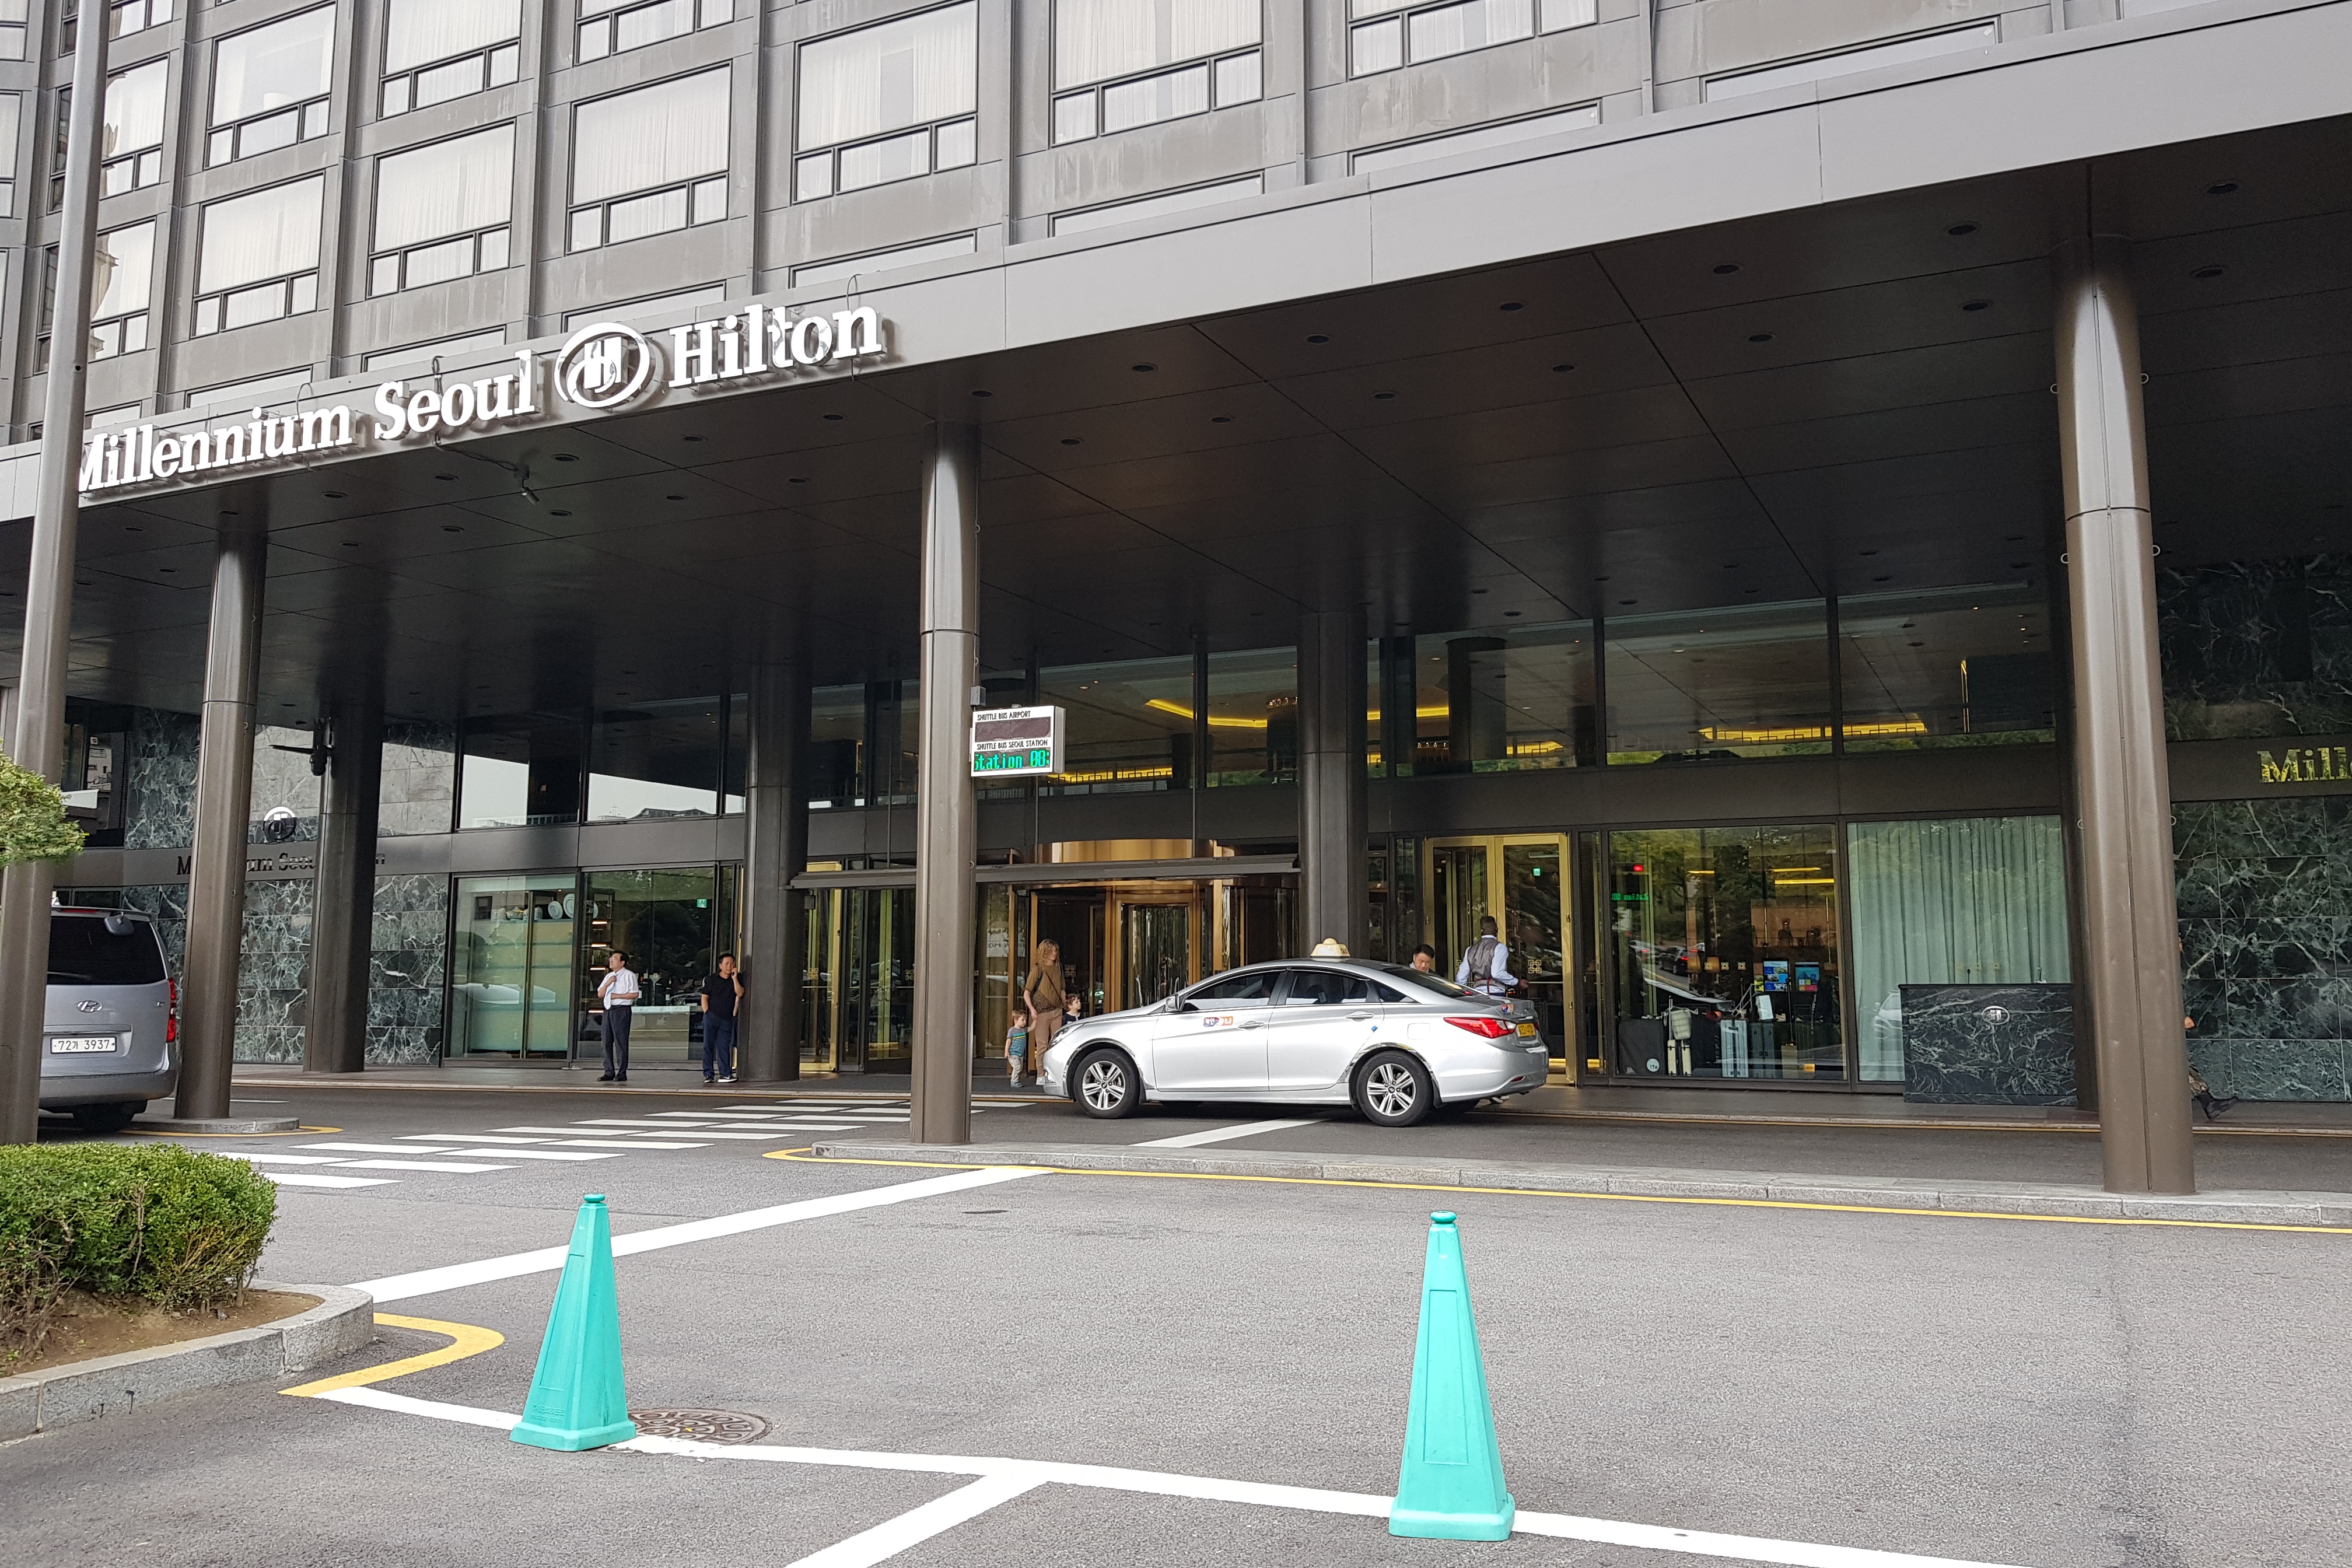 Millennium Hilton Seoul1 : Main entrance of the Millennium Hilton Seoul with a wide width and flat floor
